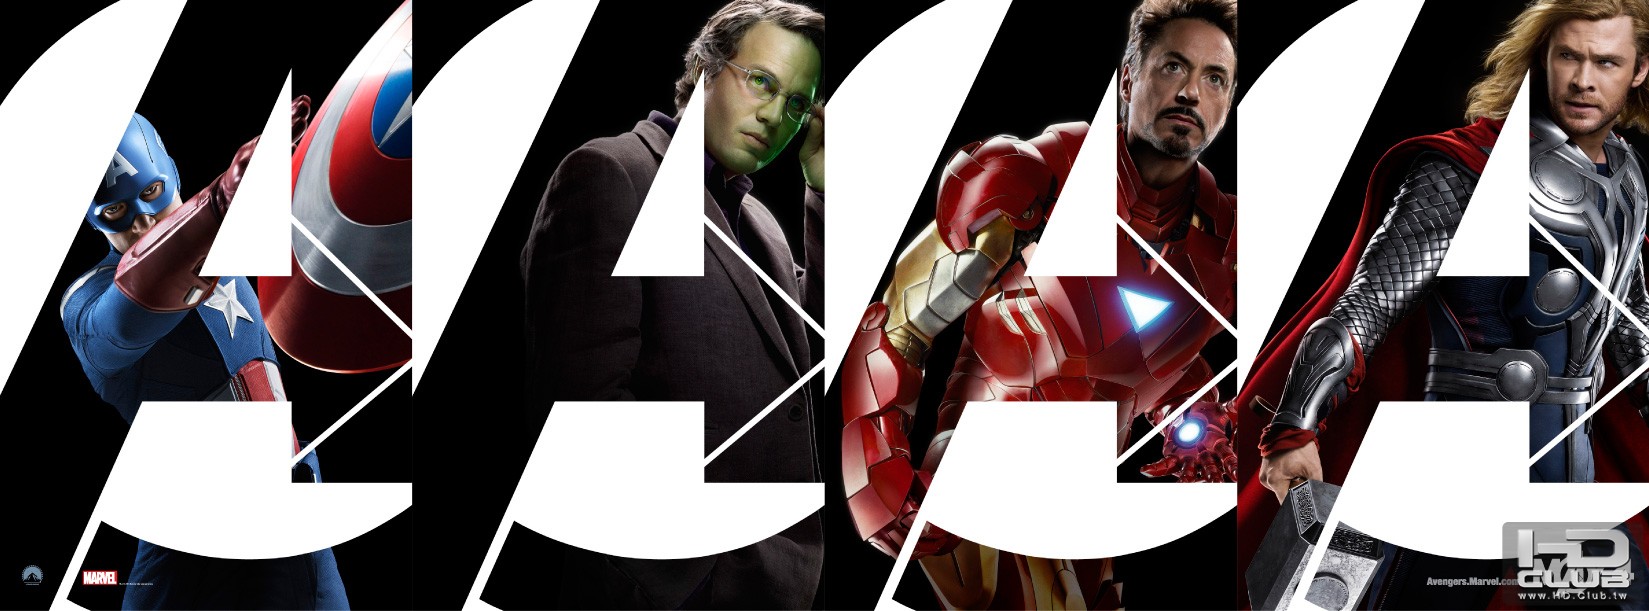 the-avengers-movie-poster-banner-01.jpg